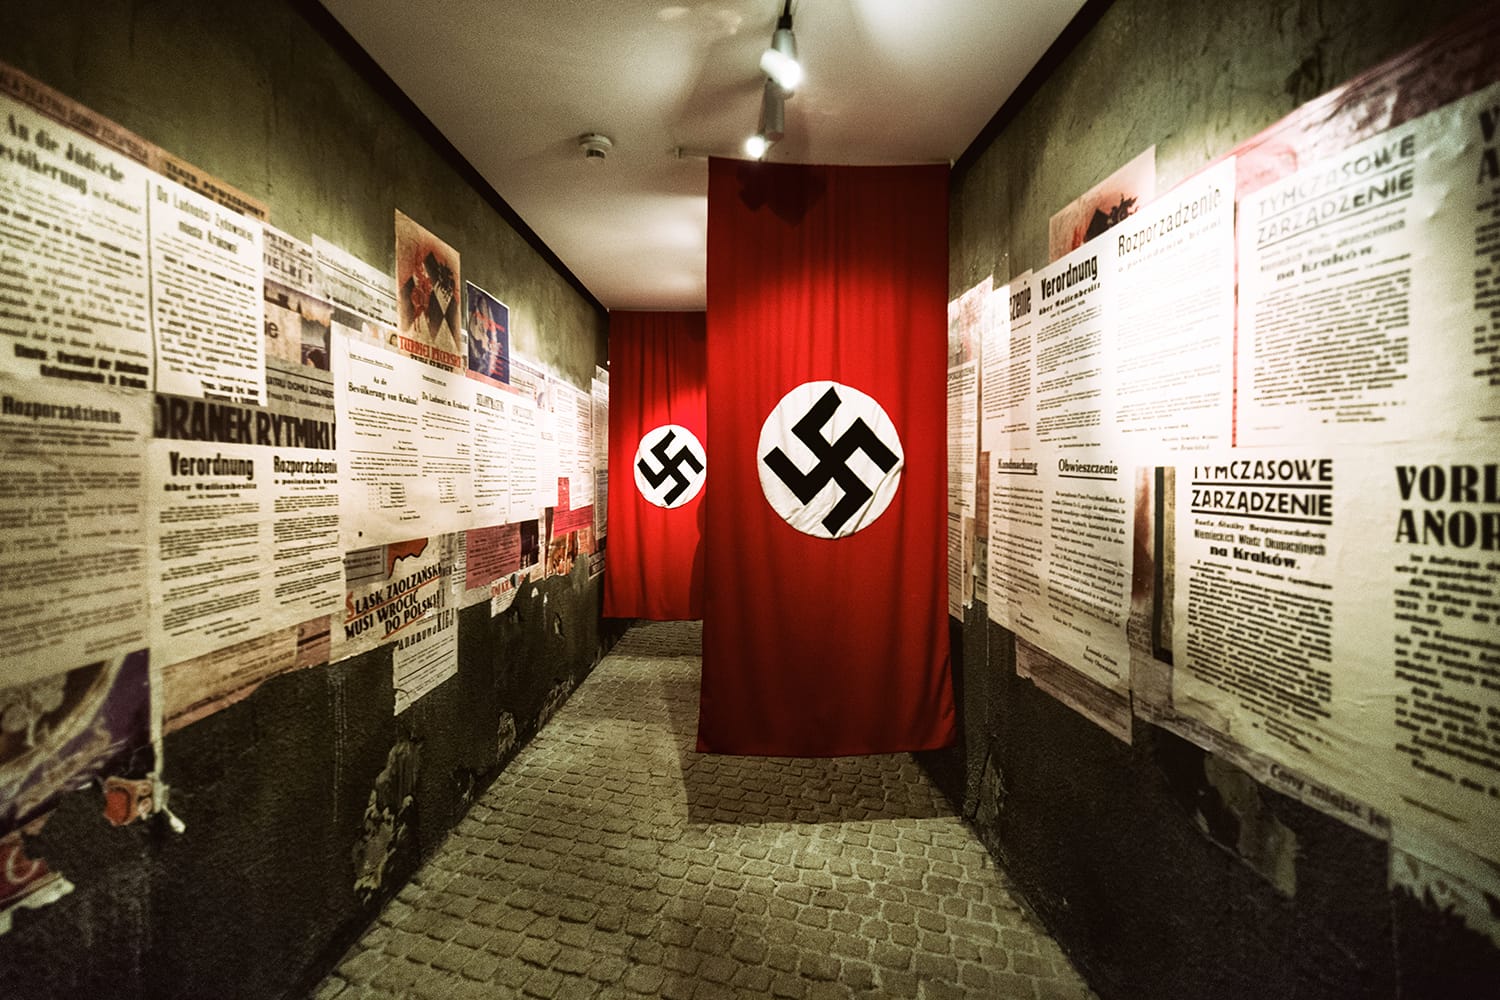 Swastika - flag in Oskar Schindler's Enamel factory museum, Krakow, Poland